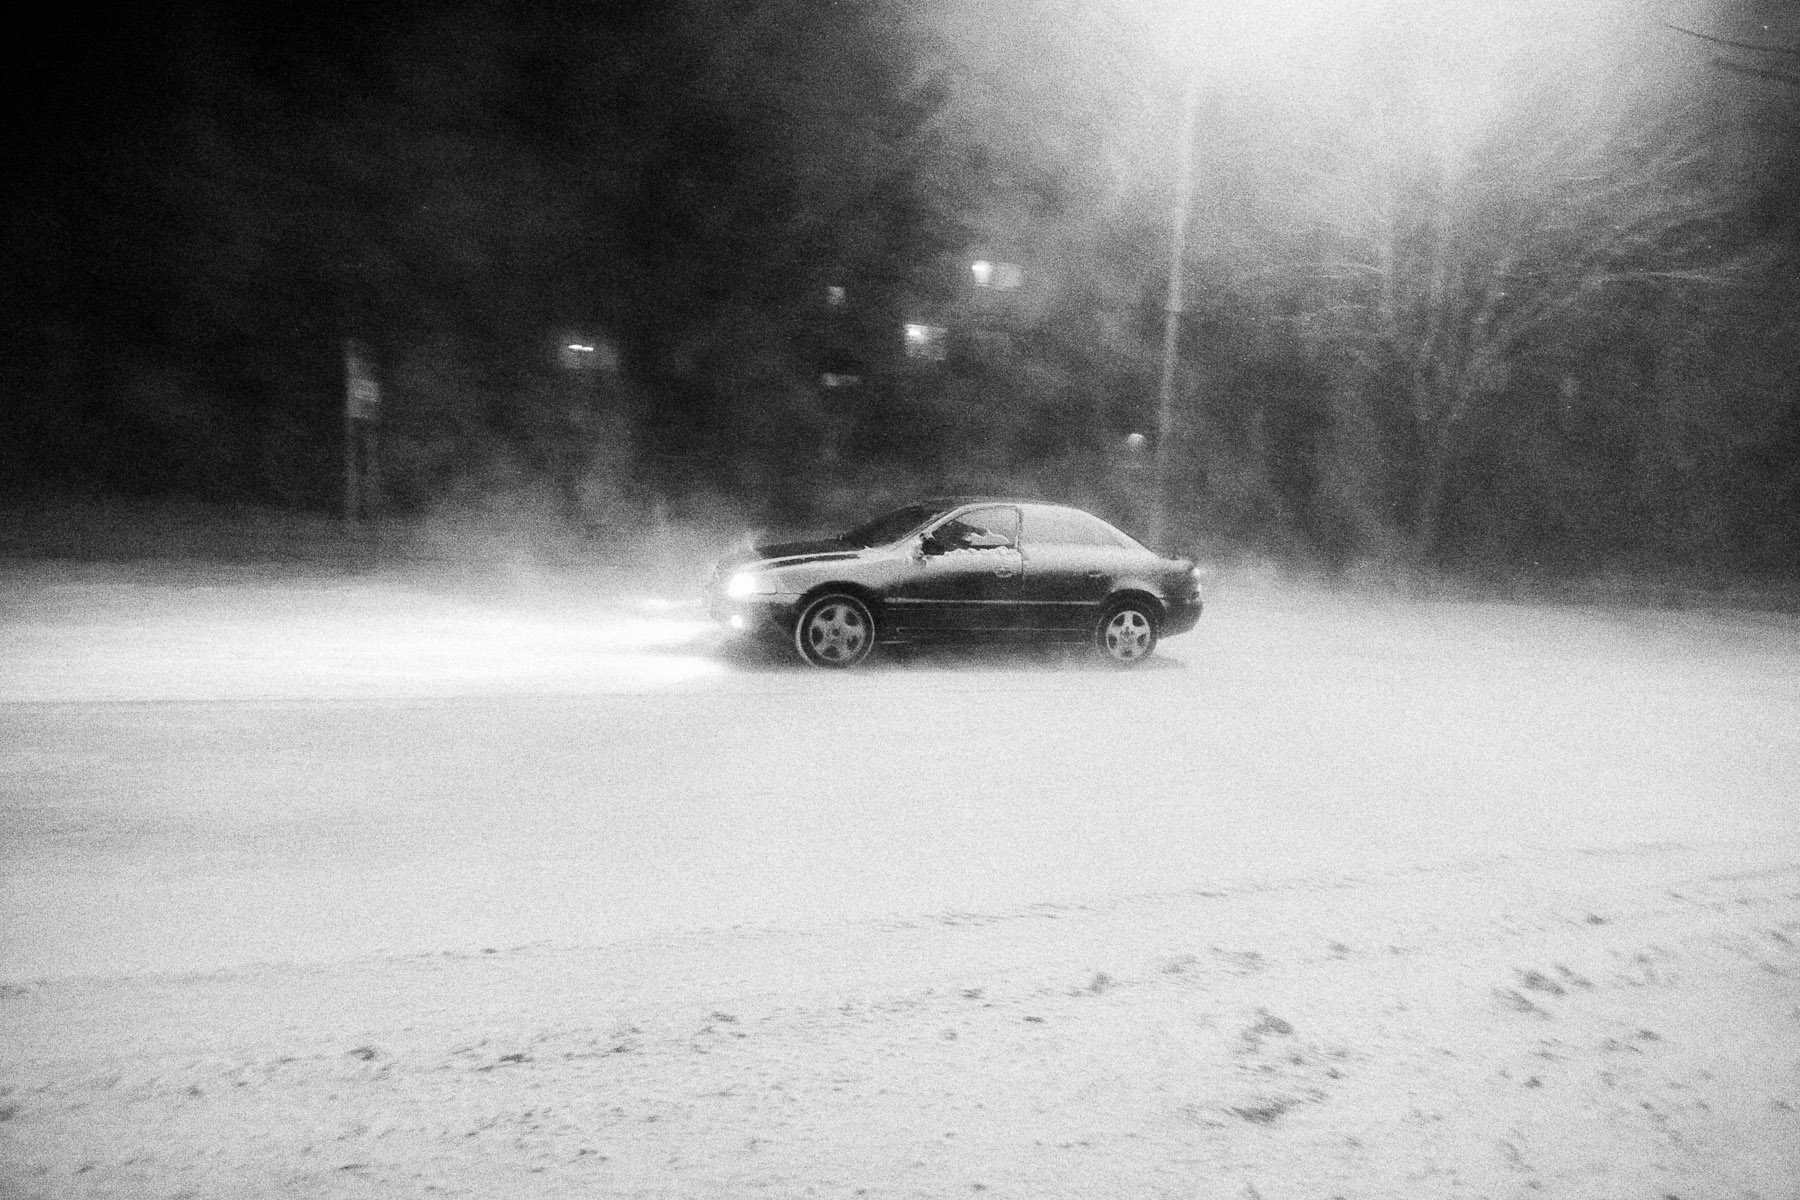 A car makes his way through the blizzard in Ajdovščina, Slovenia, March 10, 2010.